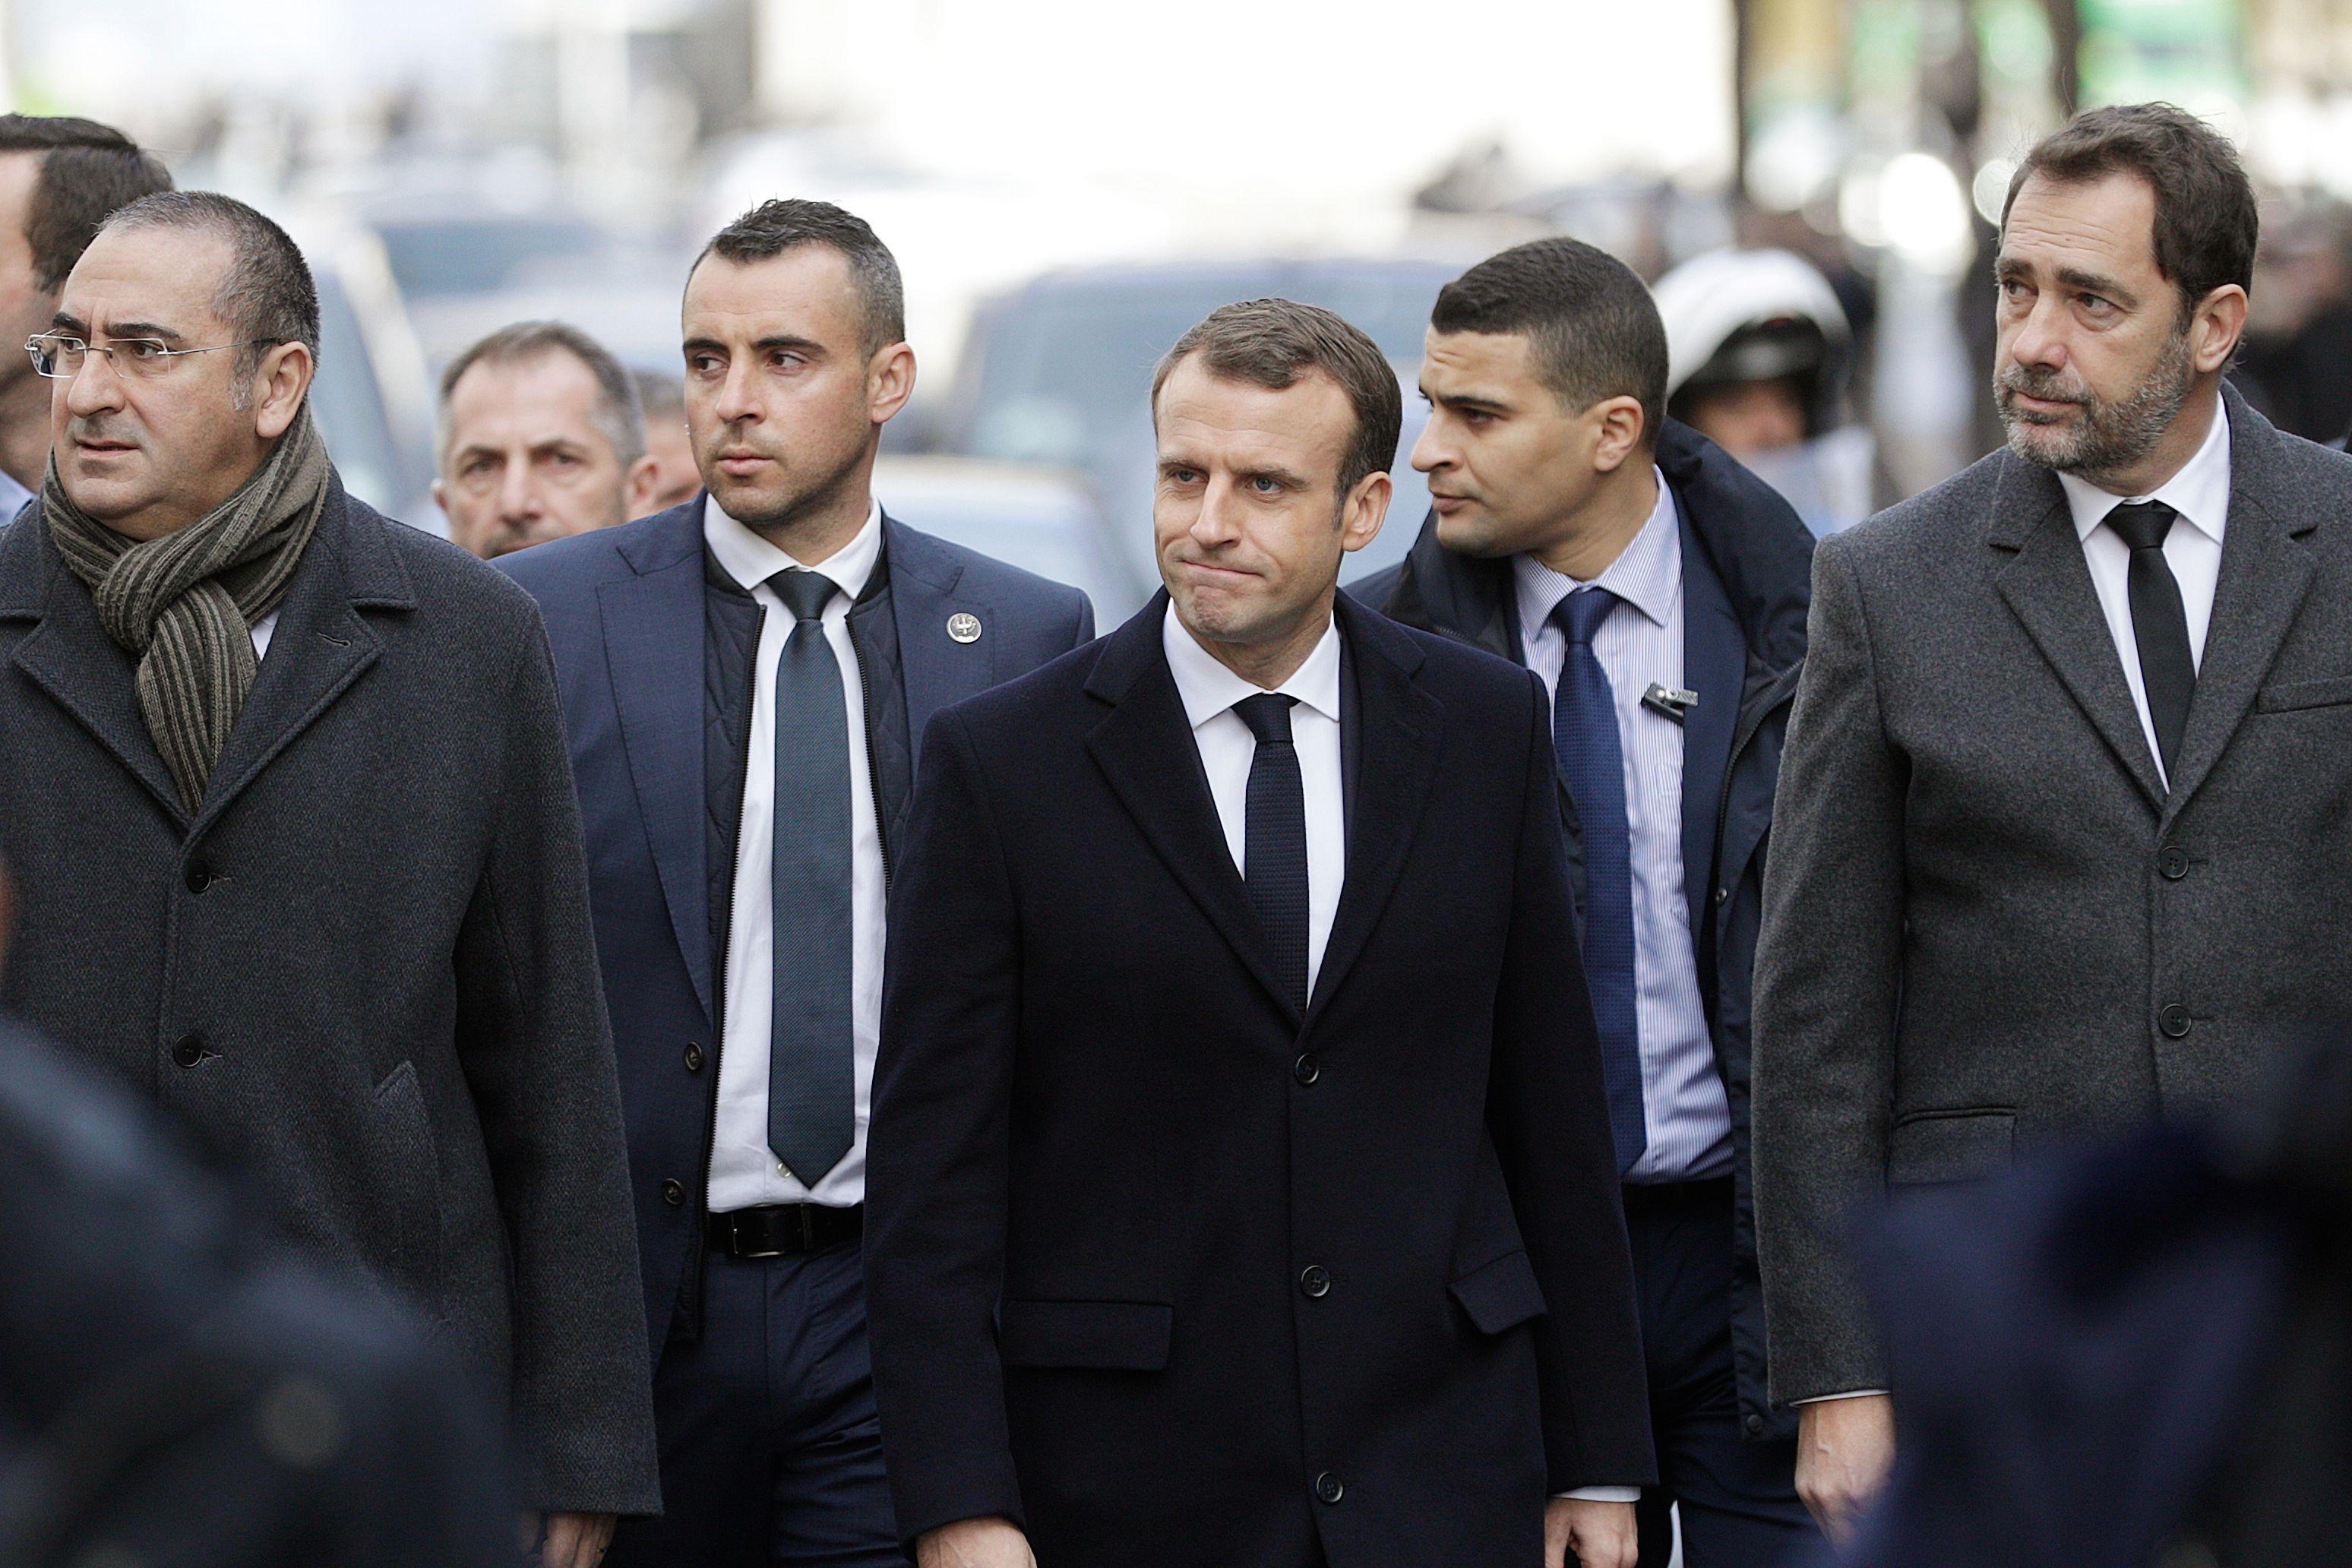 Macron, Interior Minister Christophe Castaner, Junior Minister Laurent Nunez